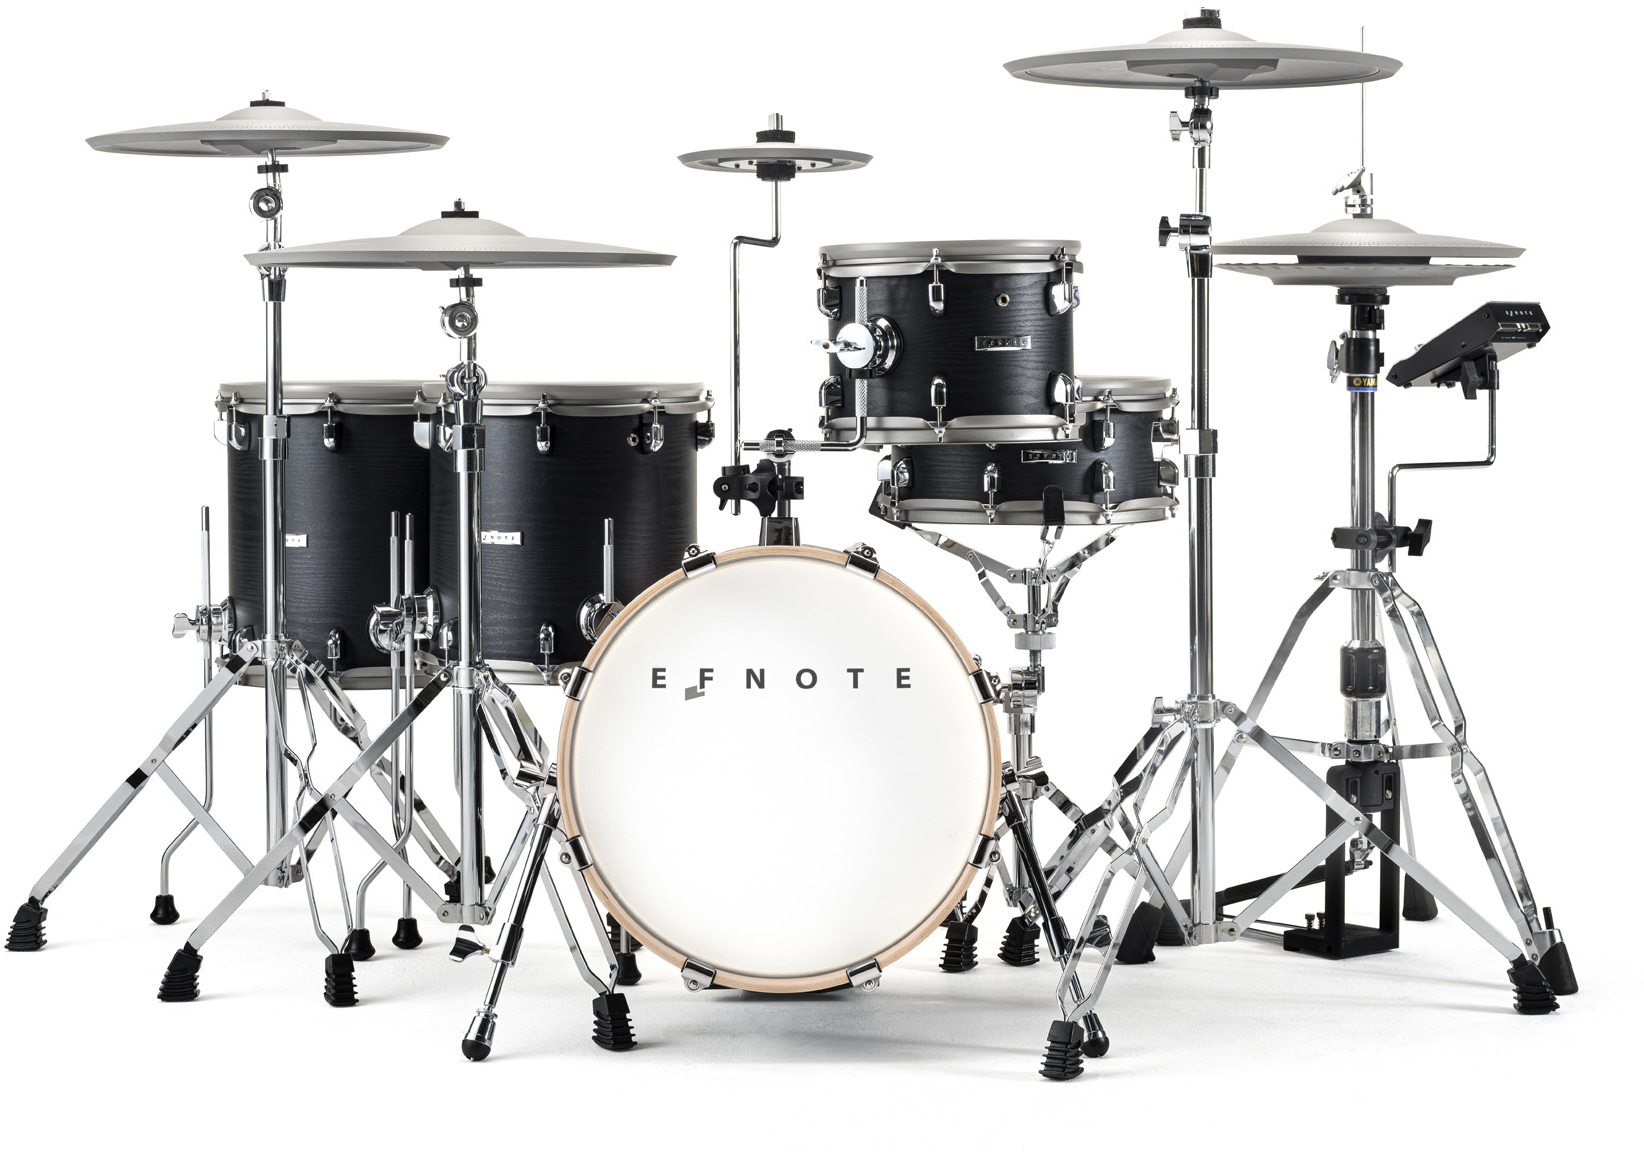 Efnote Efd5x Drum Kit - Batería electrónica completa - Main picture